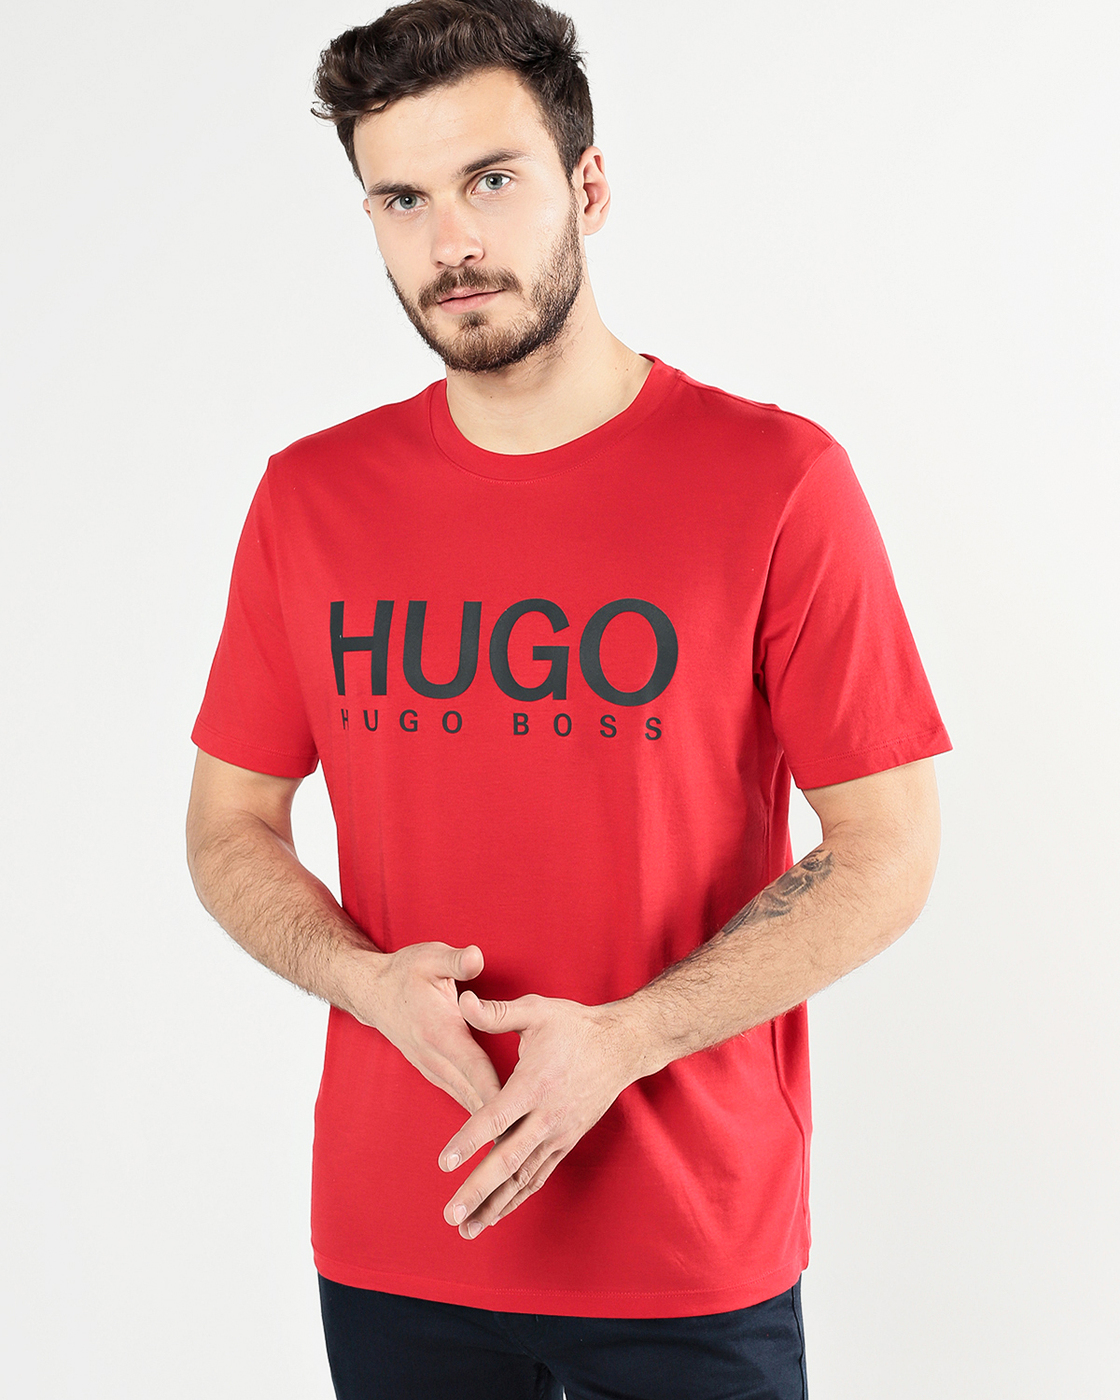 Купить футболку hugo. Футболка Boss Hugo Boss. Hugo Boss майка. Футболка Hugo Boss 50488330. Boss jugo Boss футболки.